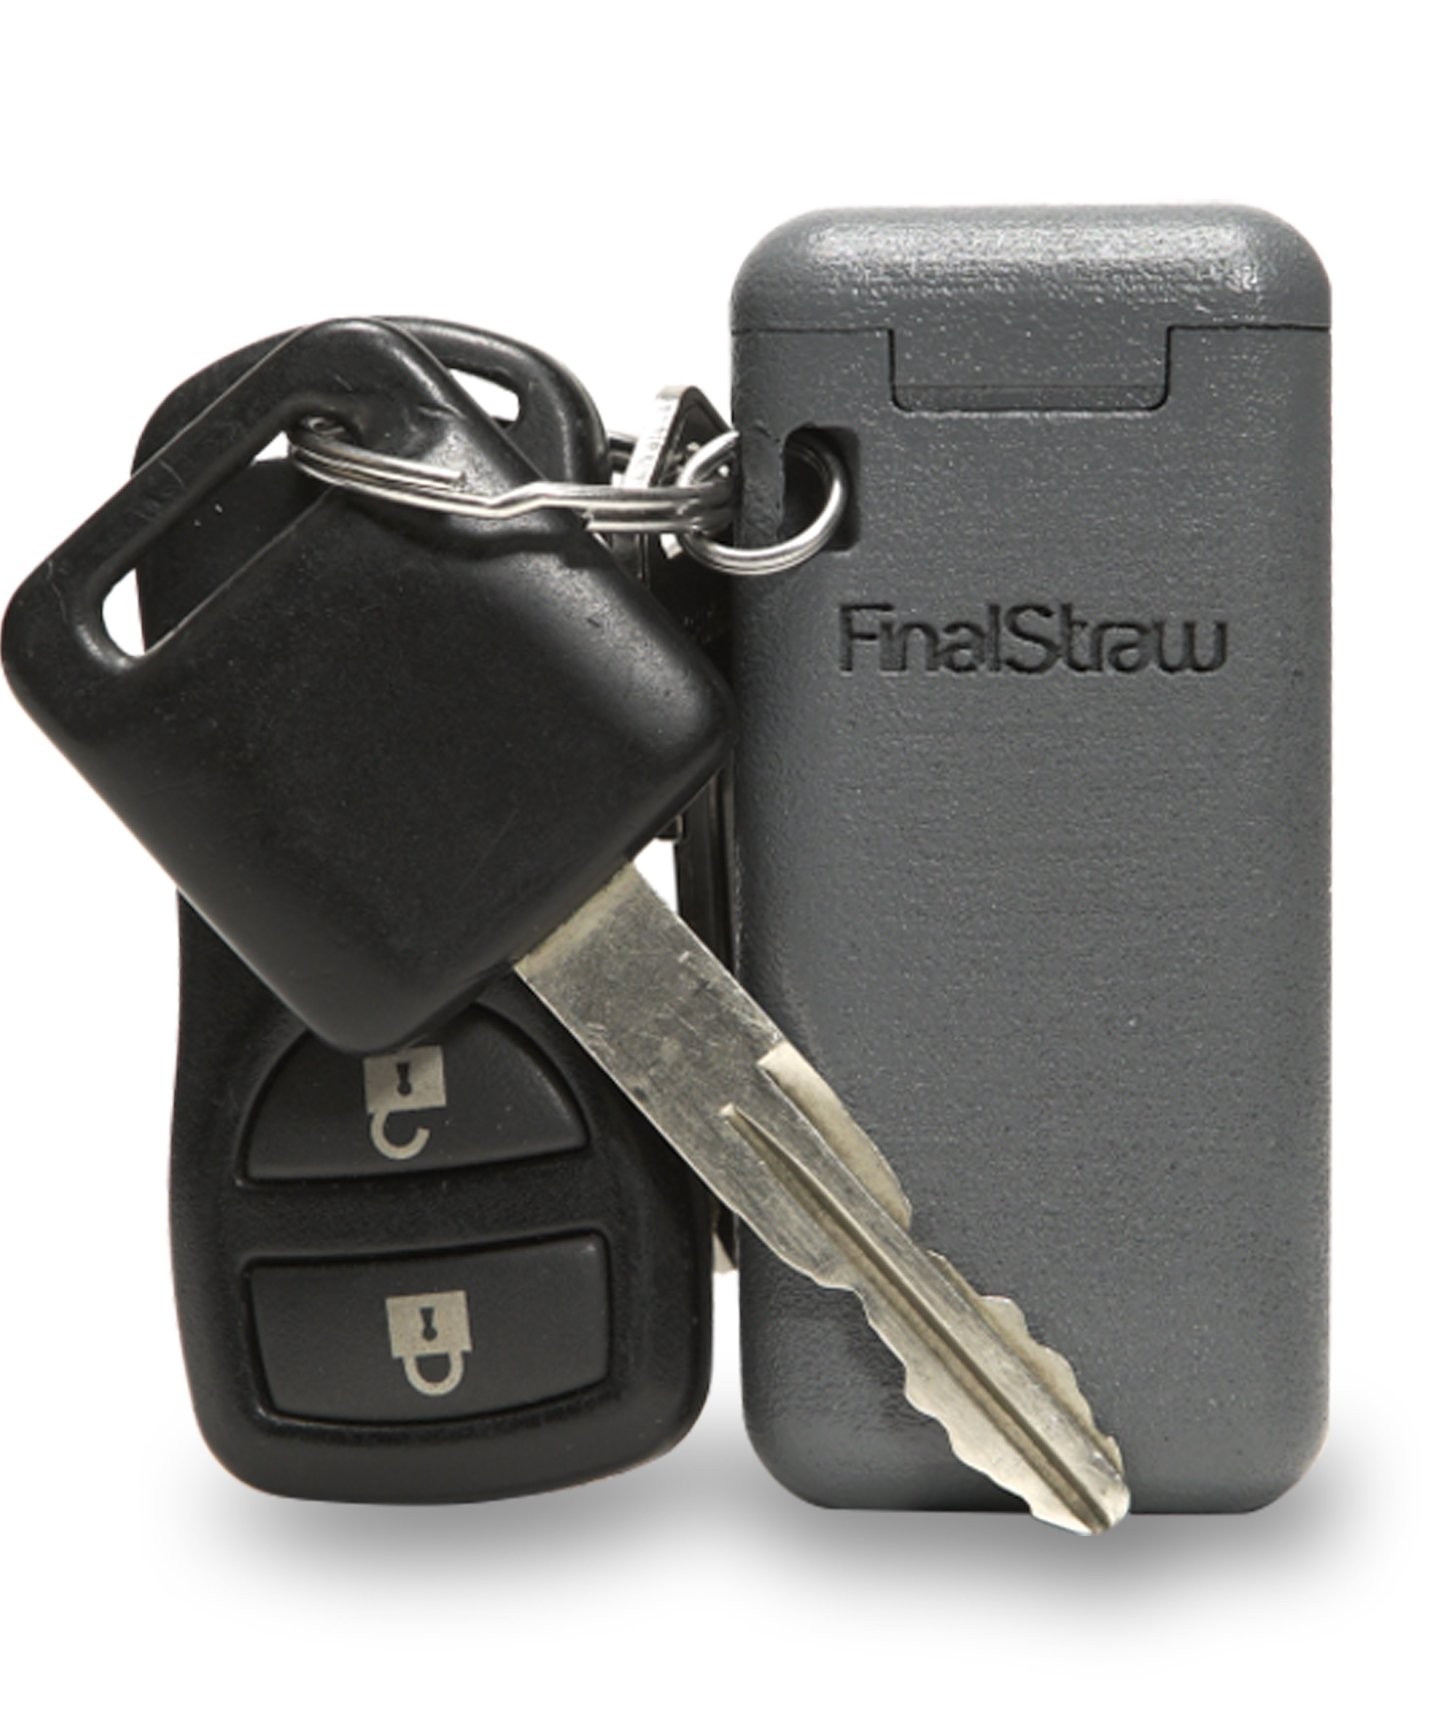 Canudo dobrável da FinalStraw pode ser guardado dentro de um caixinha do tamanho de uma chave de carro. (Foto: FinalStraw)